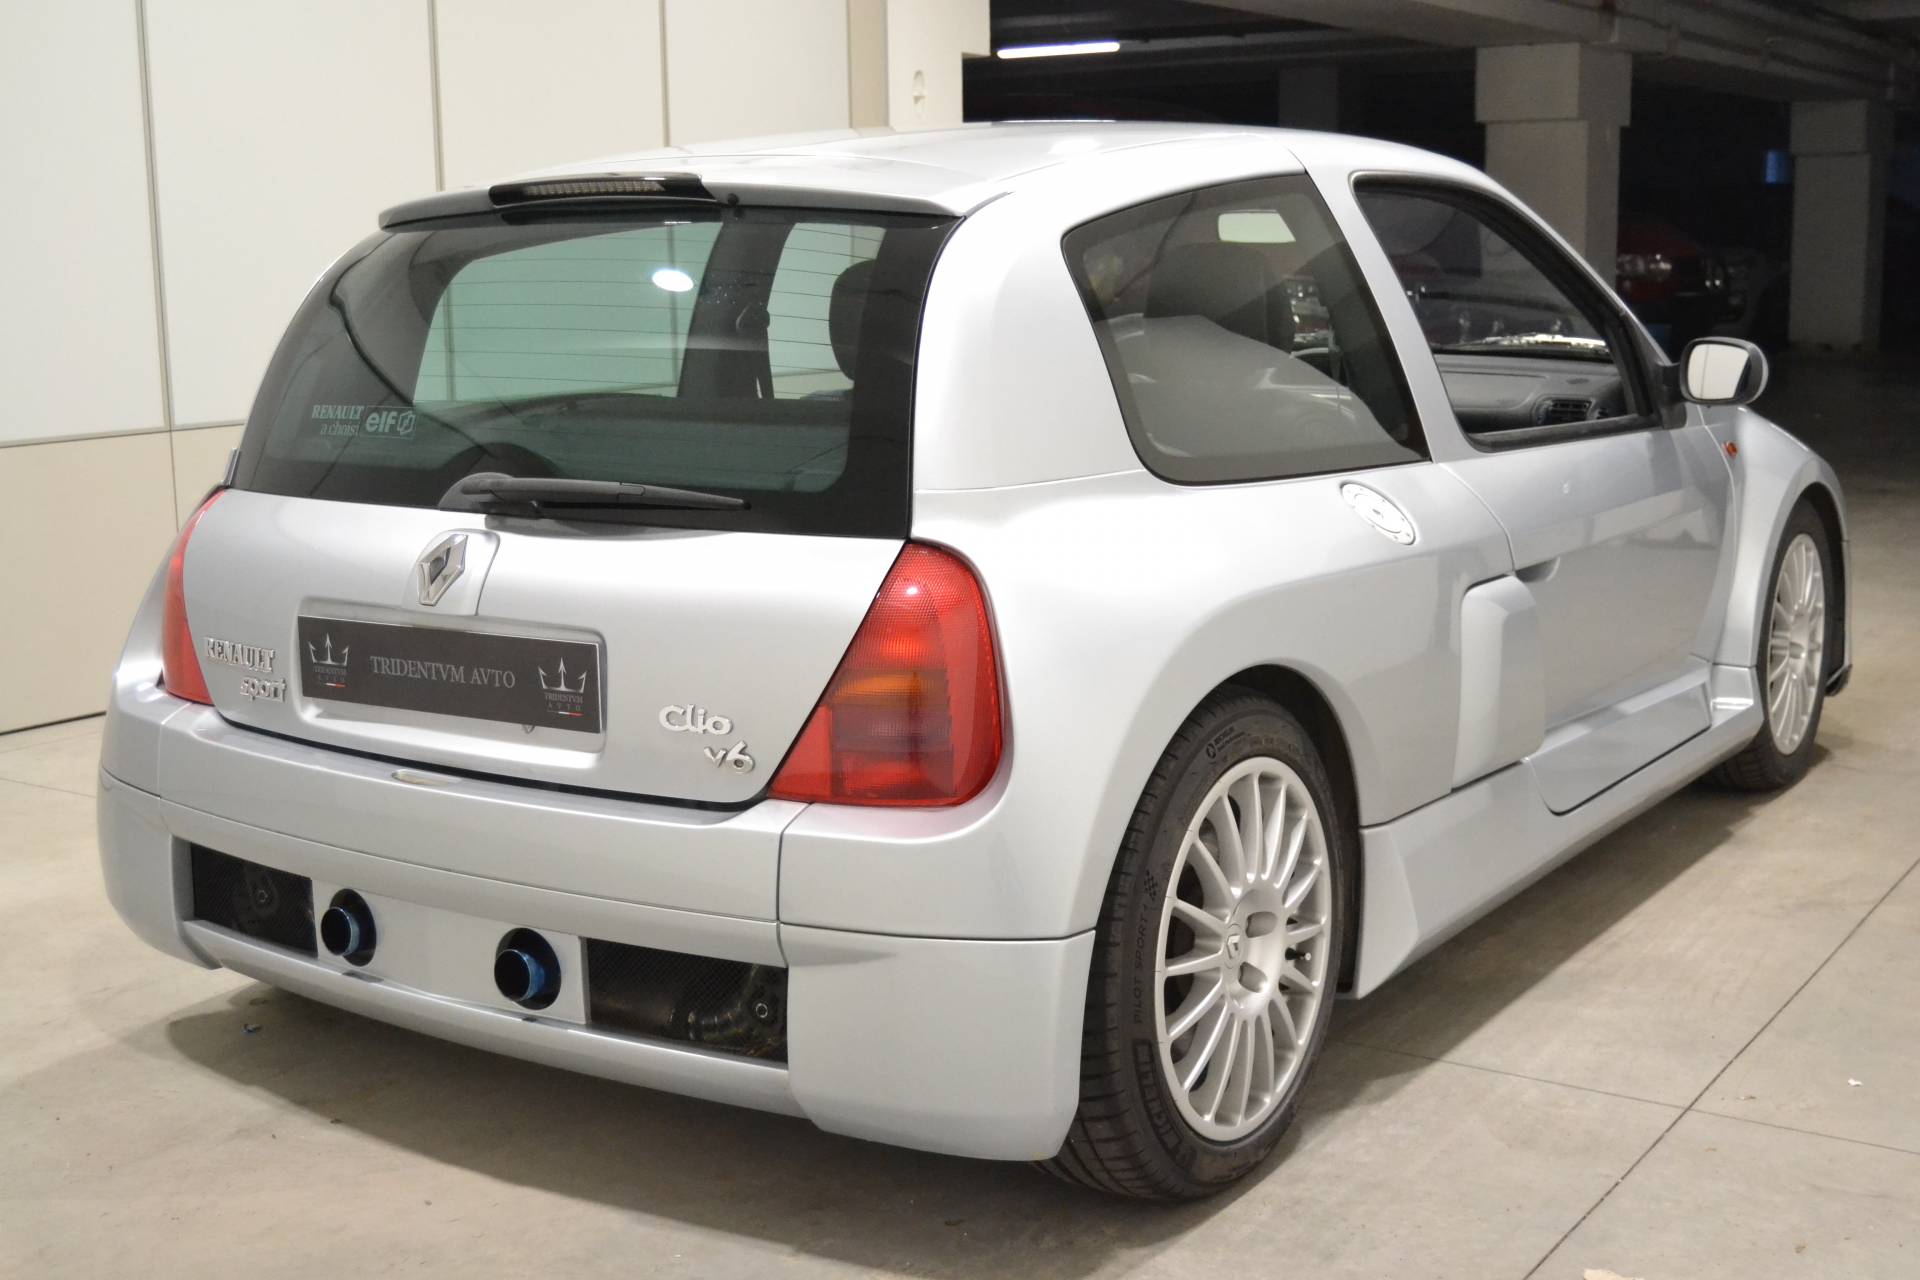 Te koop: Renault Clio II V6 (2002) aangeboden voor €